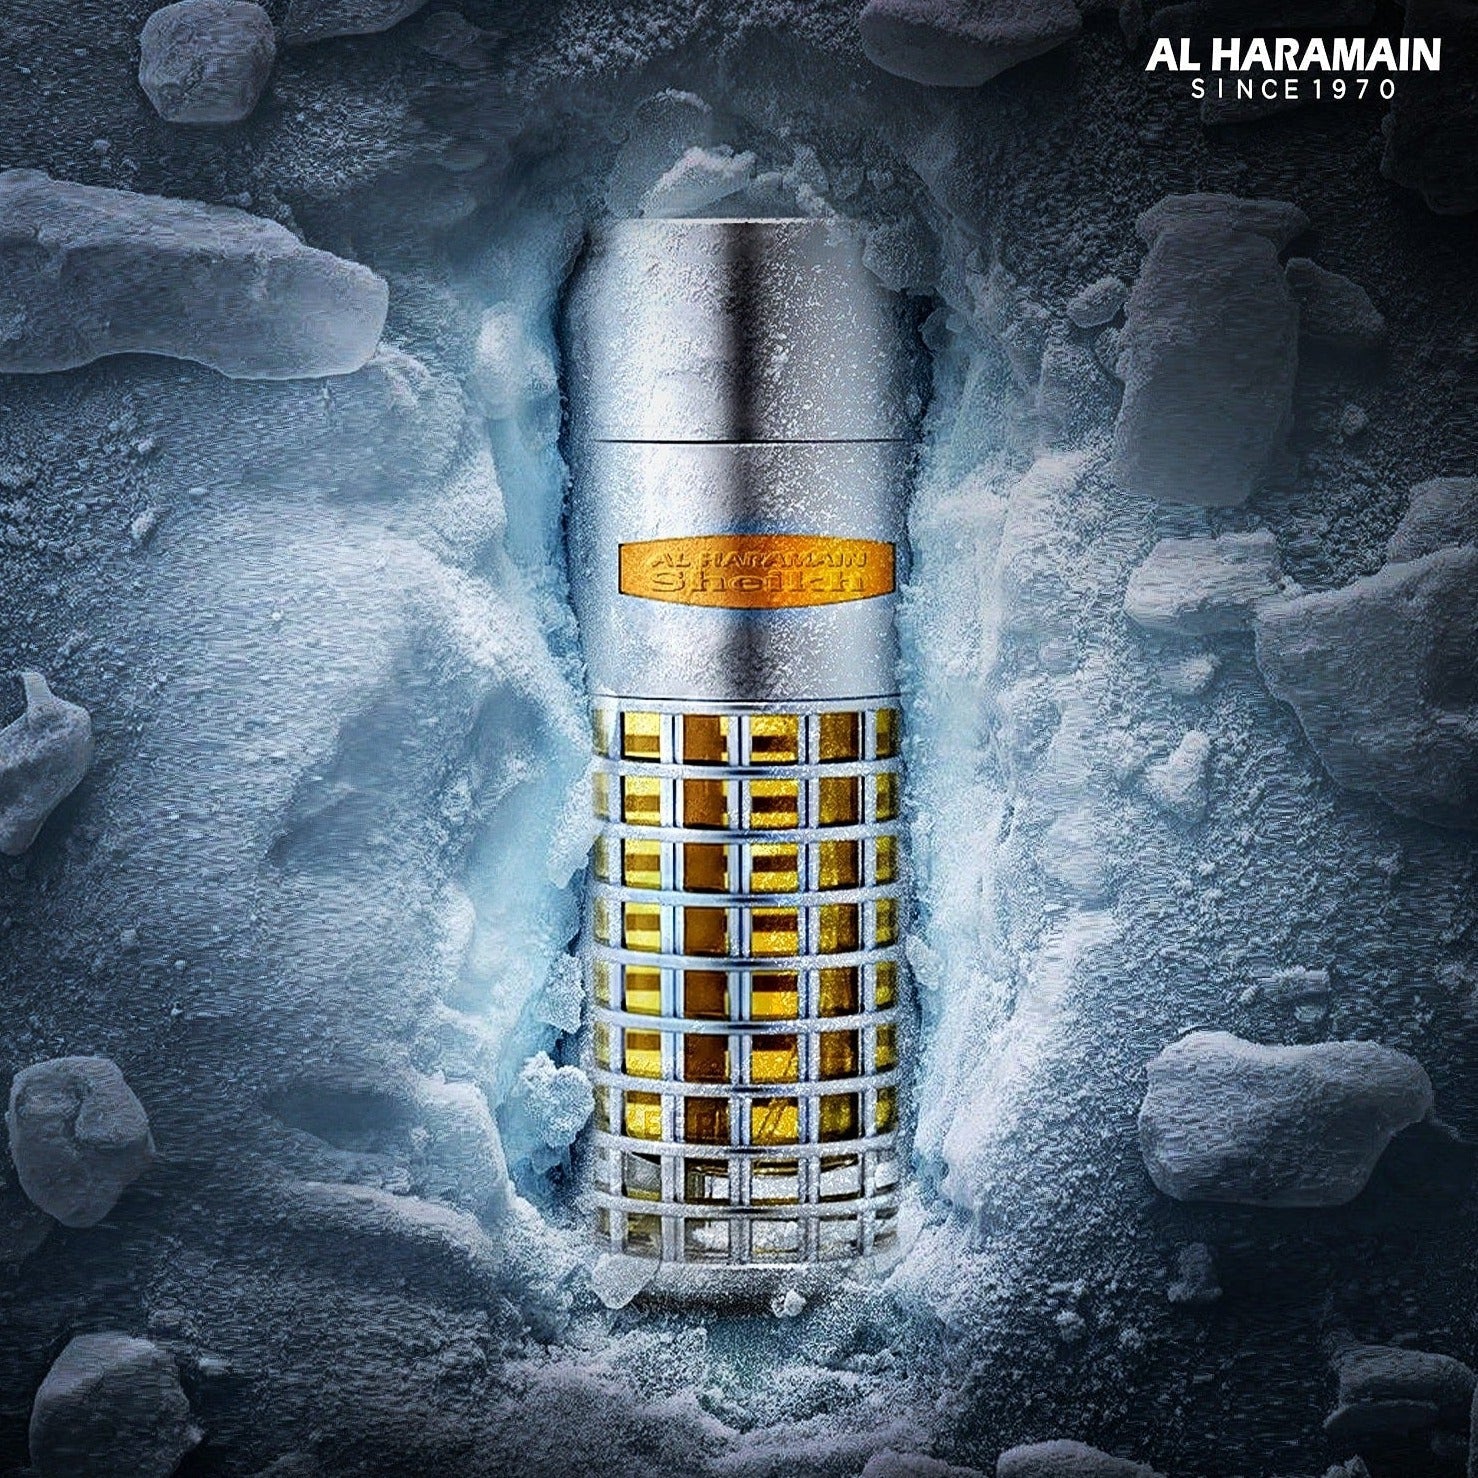 Al Haramain Sheikh EDP | My Perfume Shop Australia